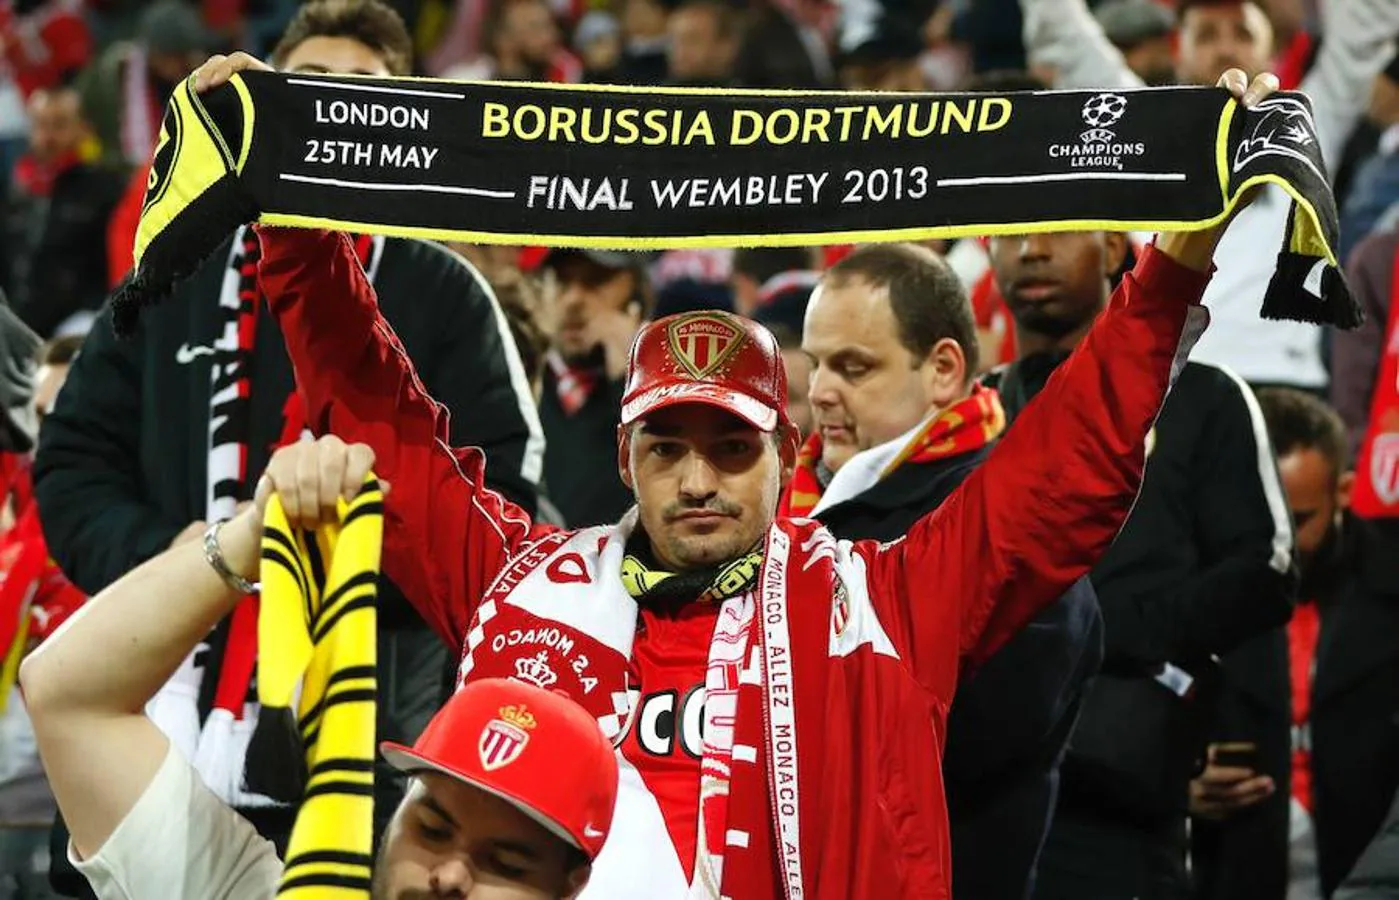 Al enterarse de la situación, los aficionados del Mónaco mostraron su solidaridad con el Borussia de Dortmund